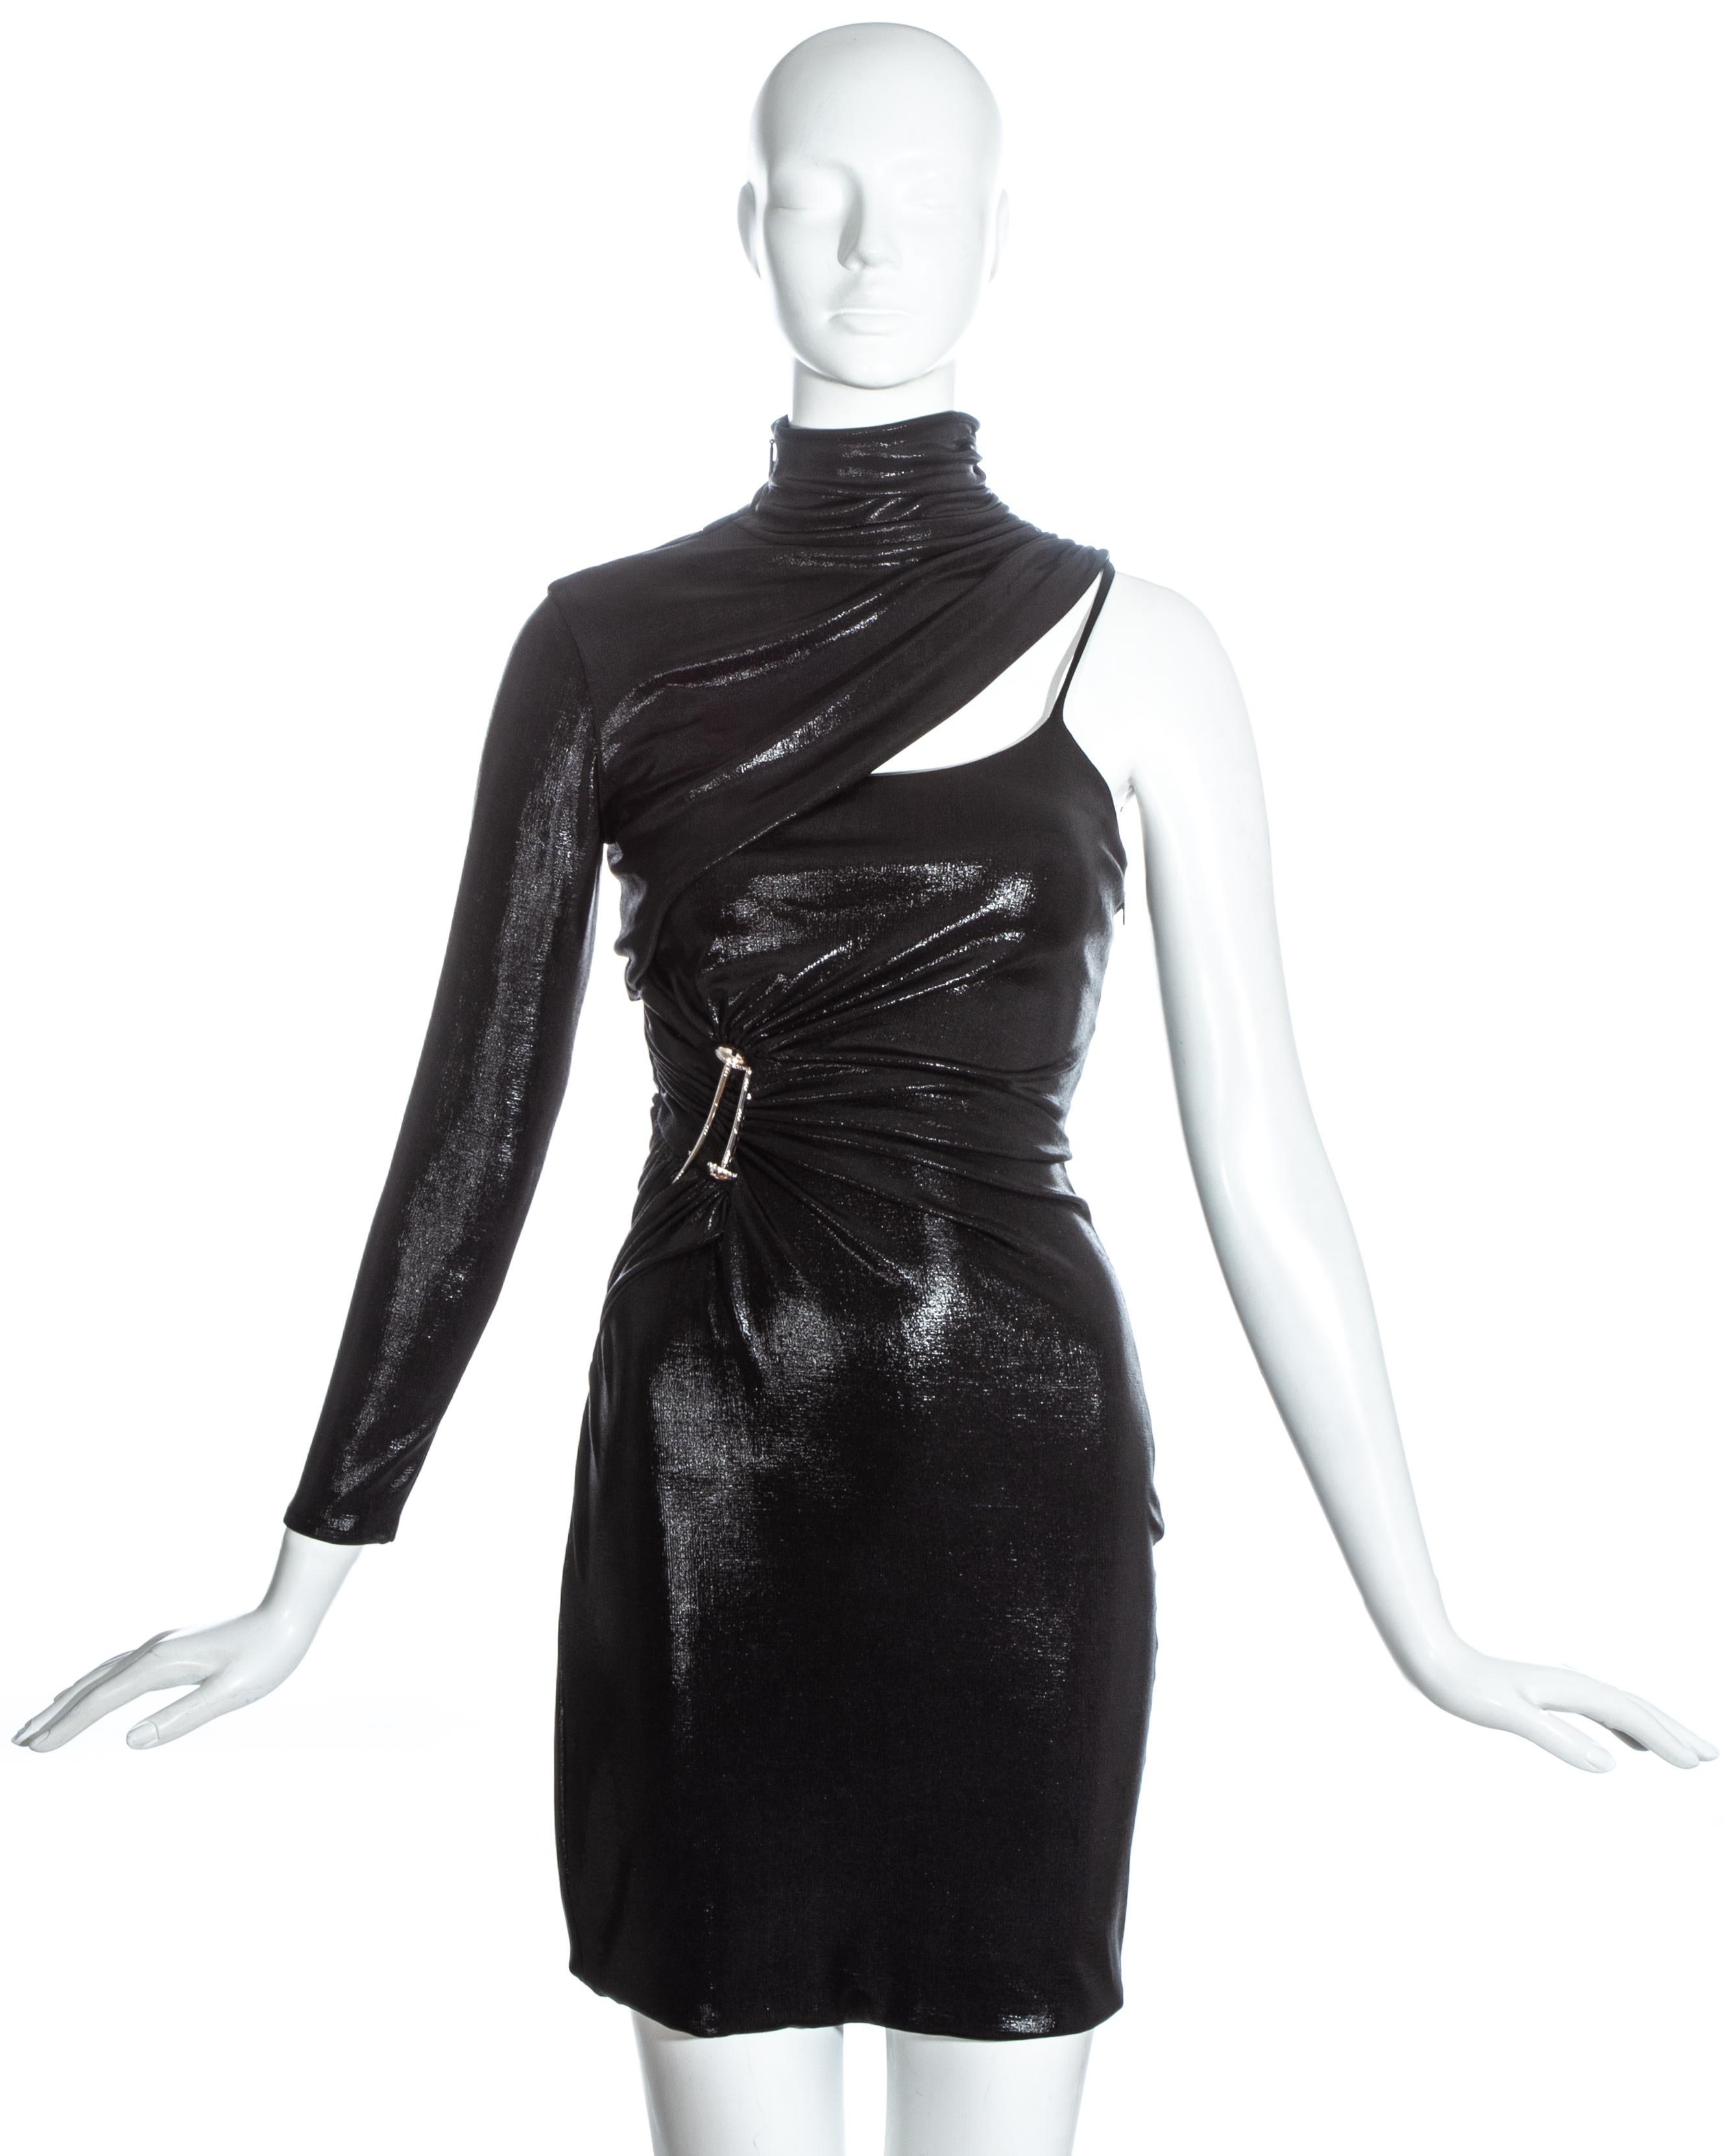 Robe à une manche en jersey liquide noir Versace avec de grandes broches en métal.

Automne-Hiver 2013